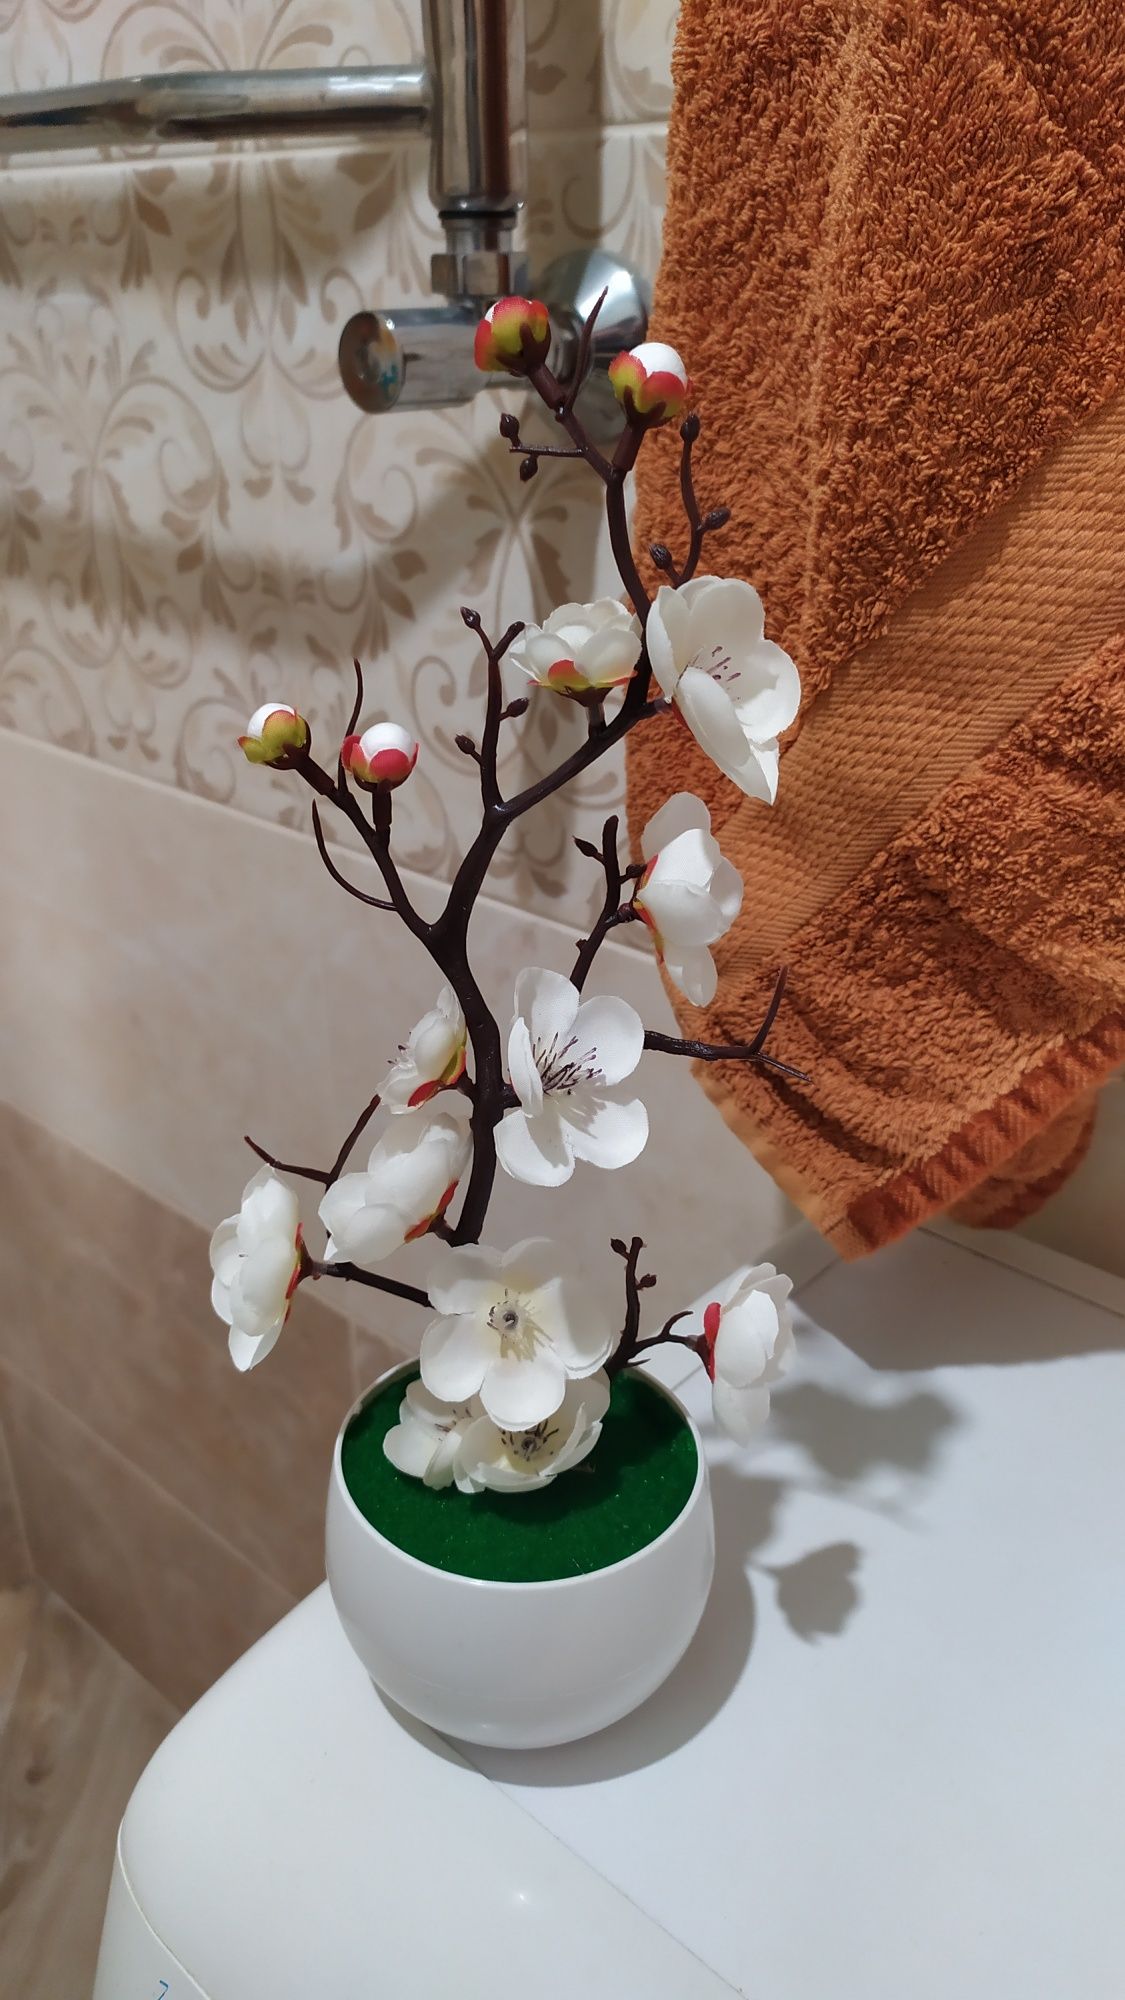 Цветок искусственный в горшке комнатный Растение бонсай Квітка декор